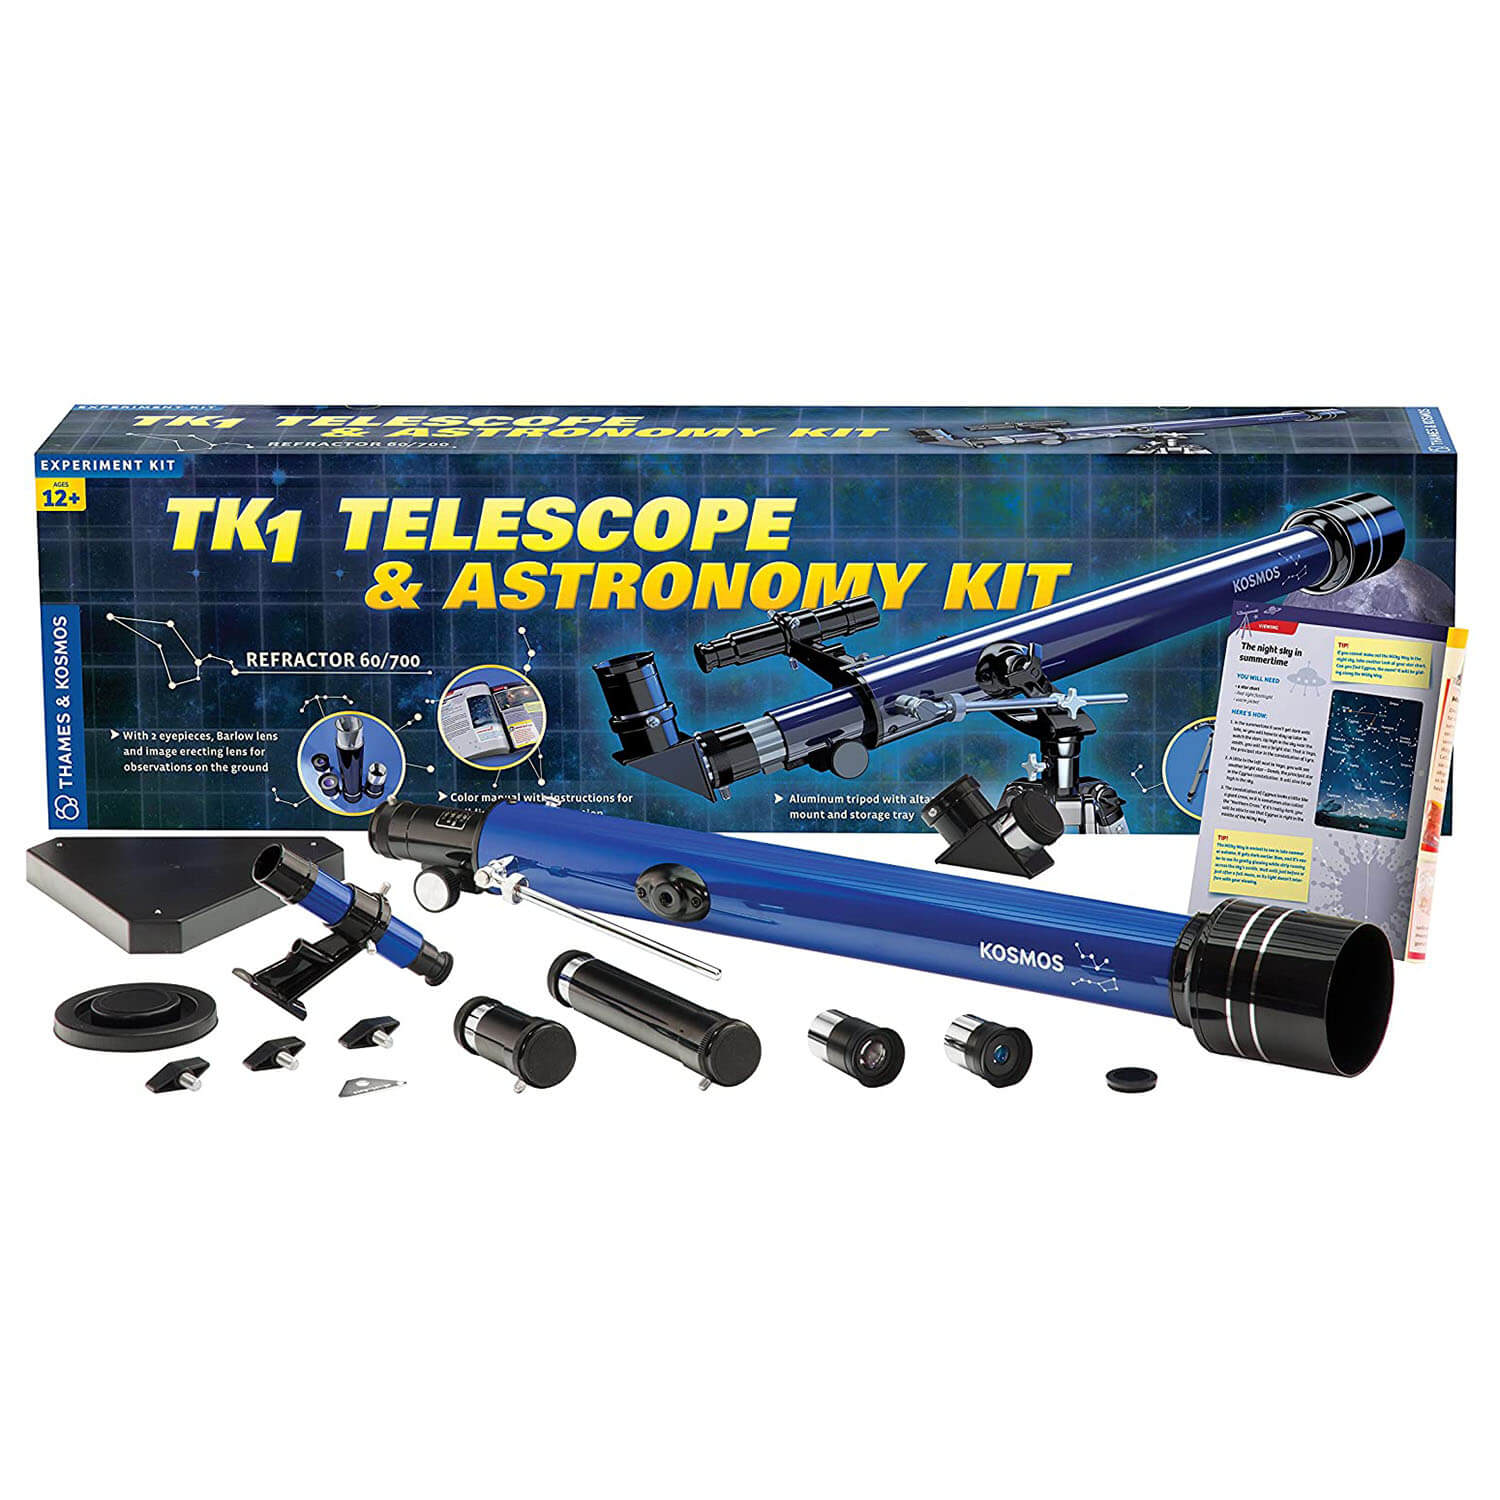 Thames and Kosmos TK1 Telescope & Astronomy Kit